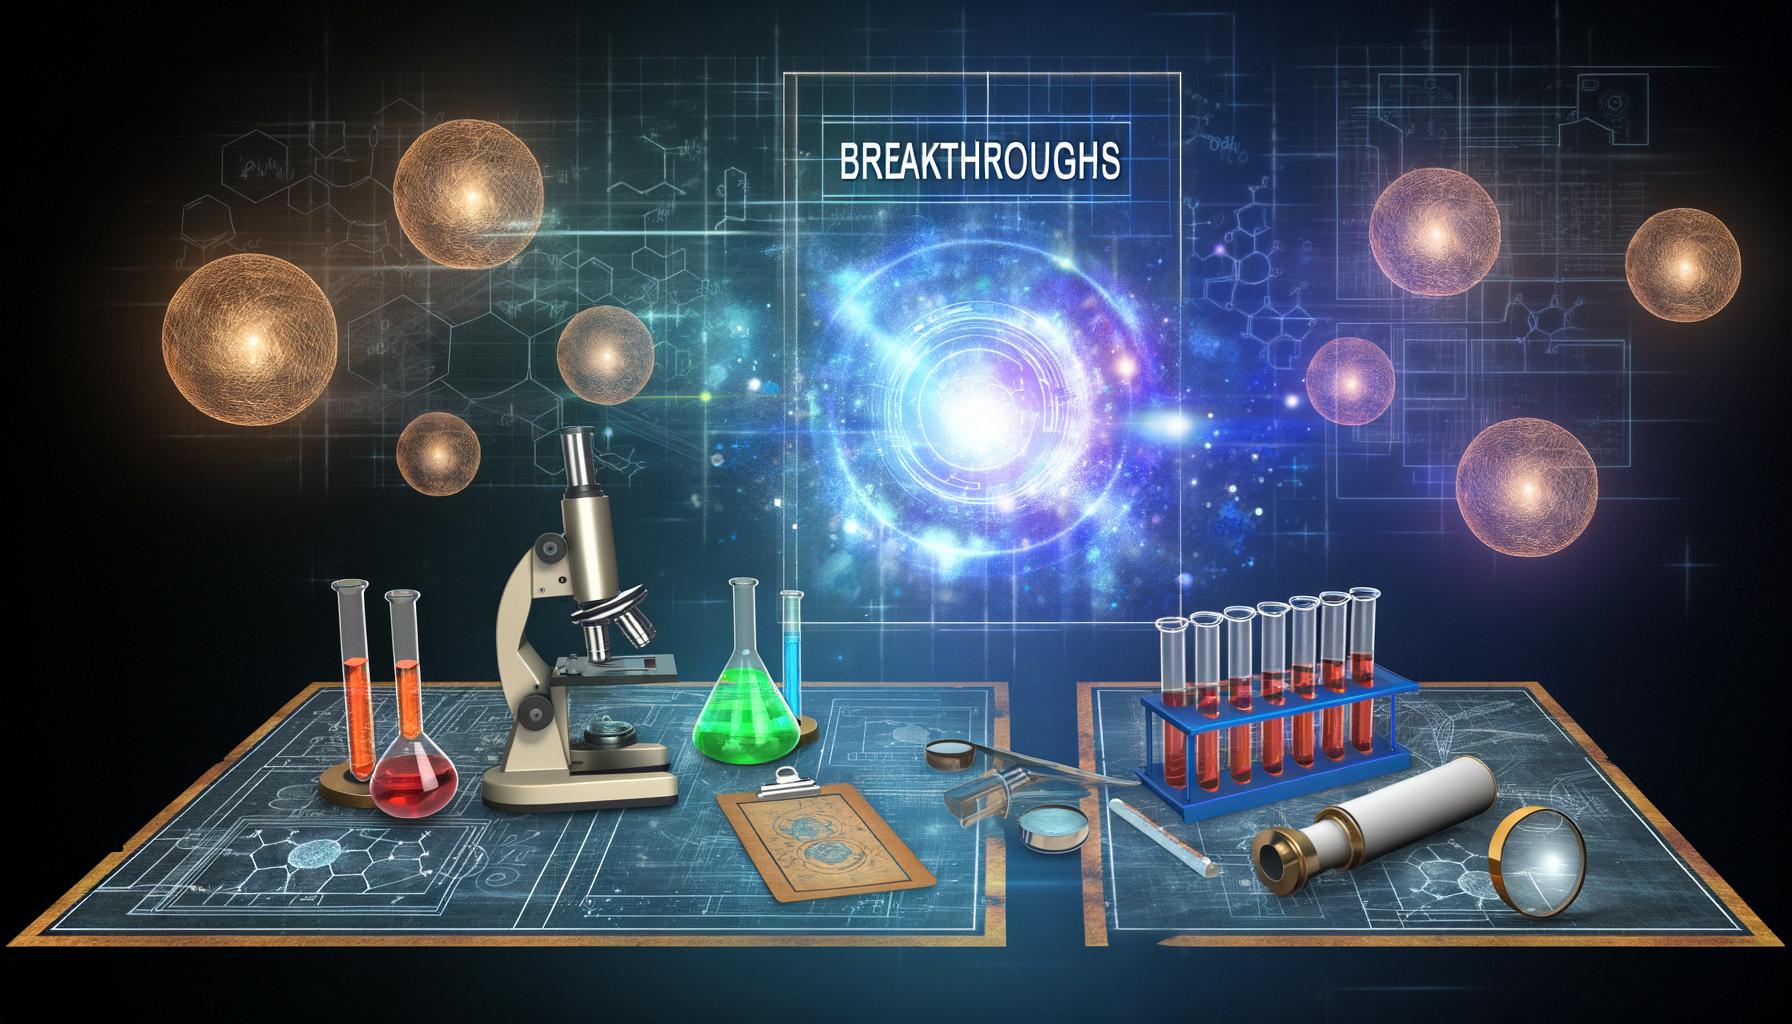 Breakthroughs across various scientific fields